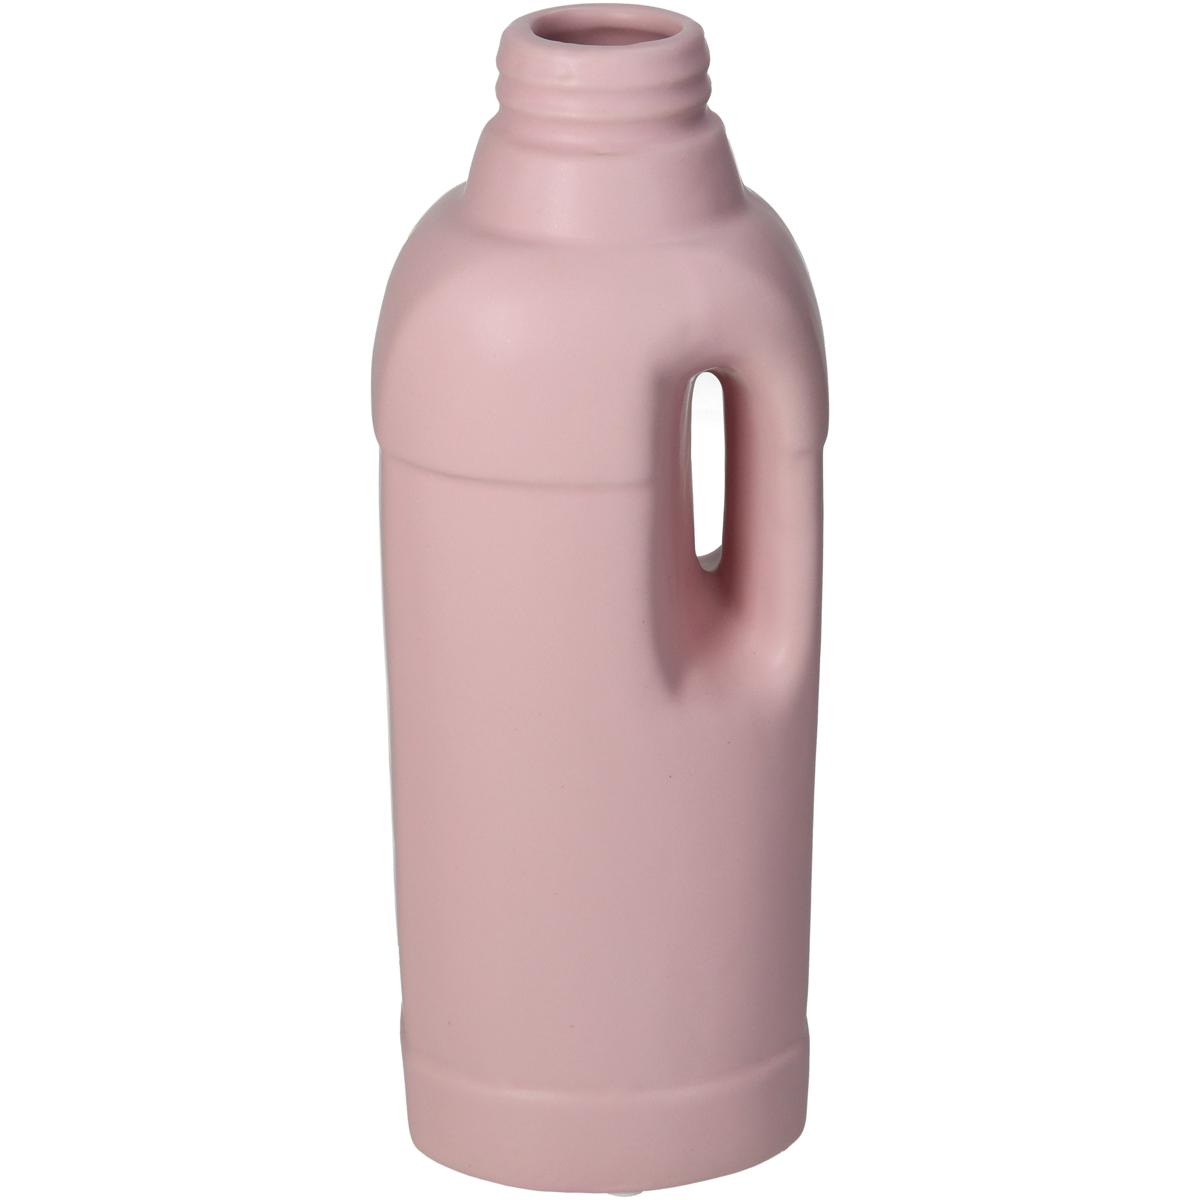 Βάζο Κεραμικό Μπουκάλι Ροζ ARTE LIBRE 9,3x8,8x25,5εκ. 05154175 (Υλικό: Κεραμικό, Χρώμα: Ροζ) - ARTELIBRE - 05154175